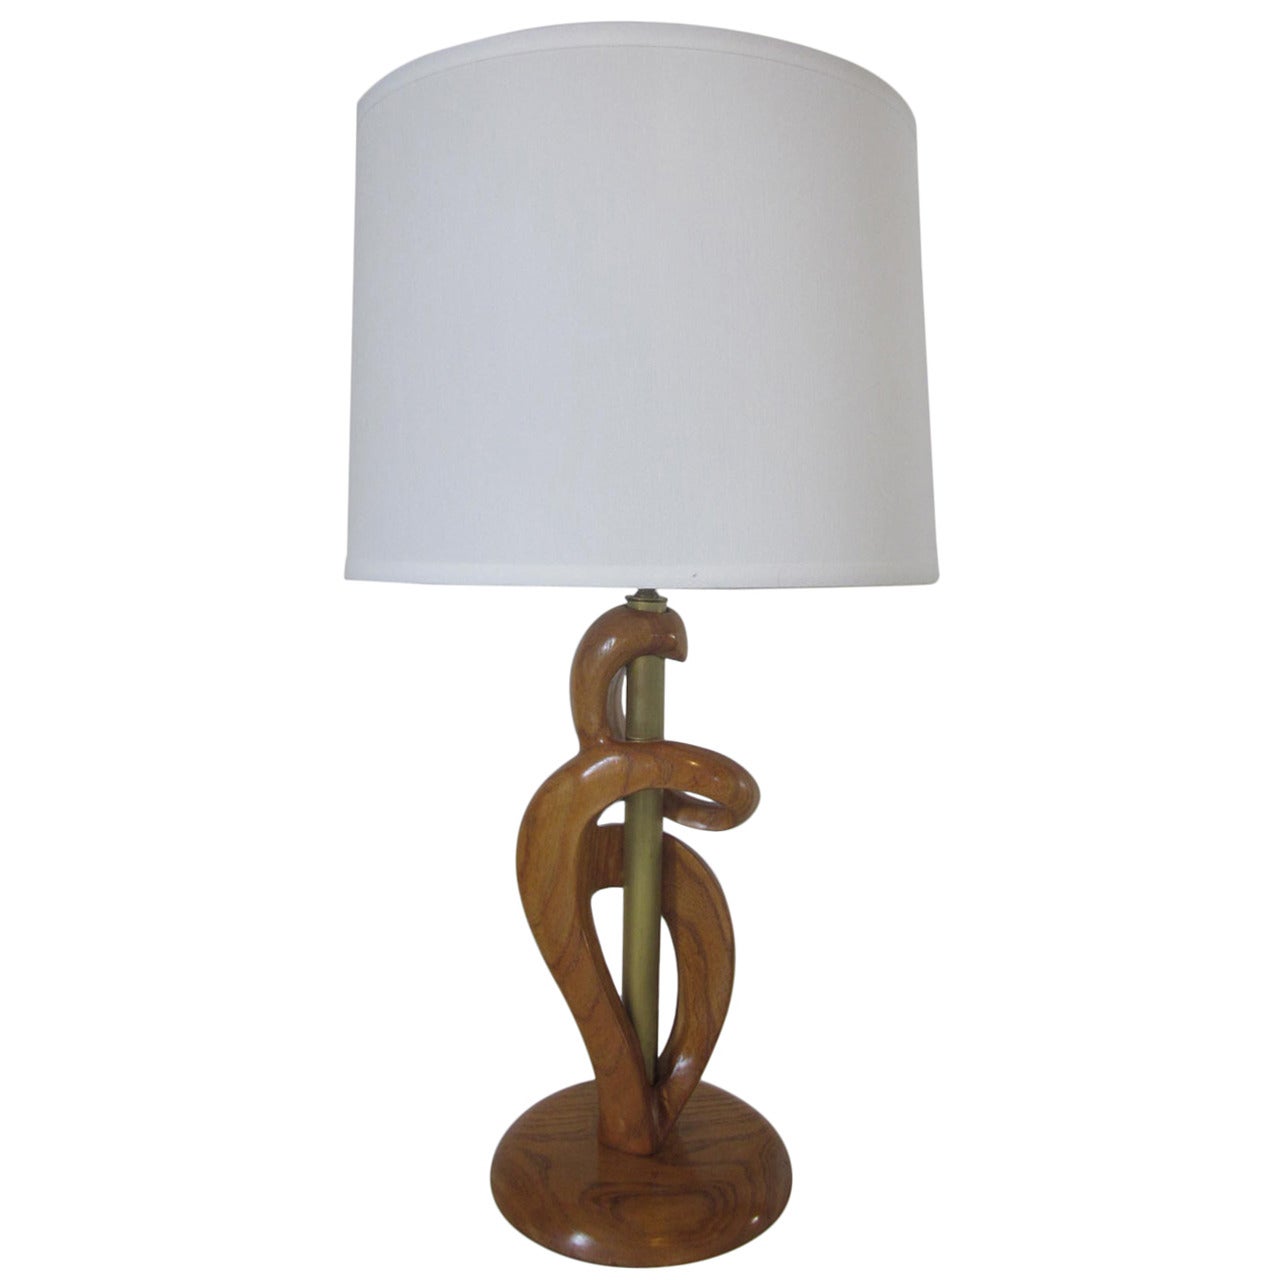 Heifetz Sculptural Wood and Brass Table Lamp